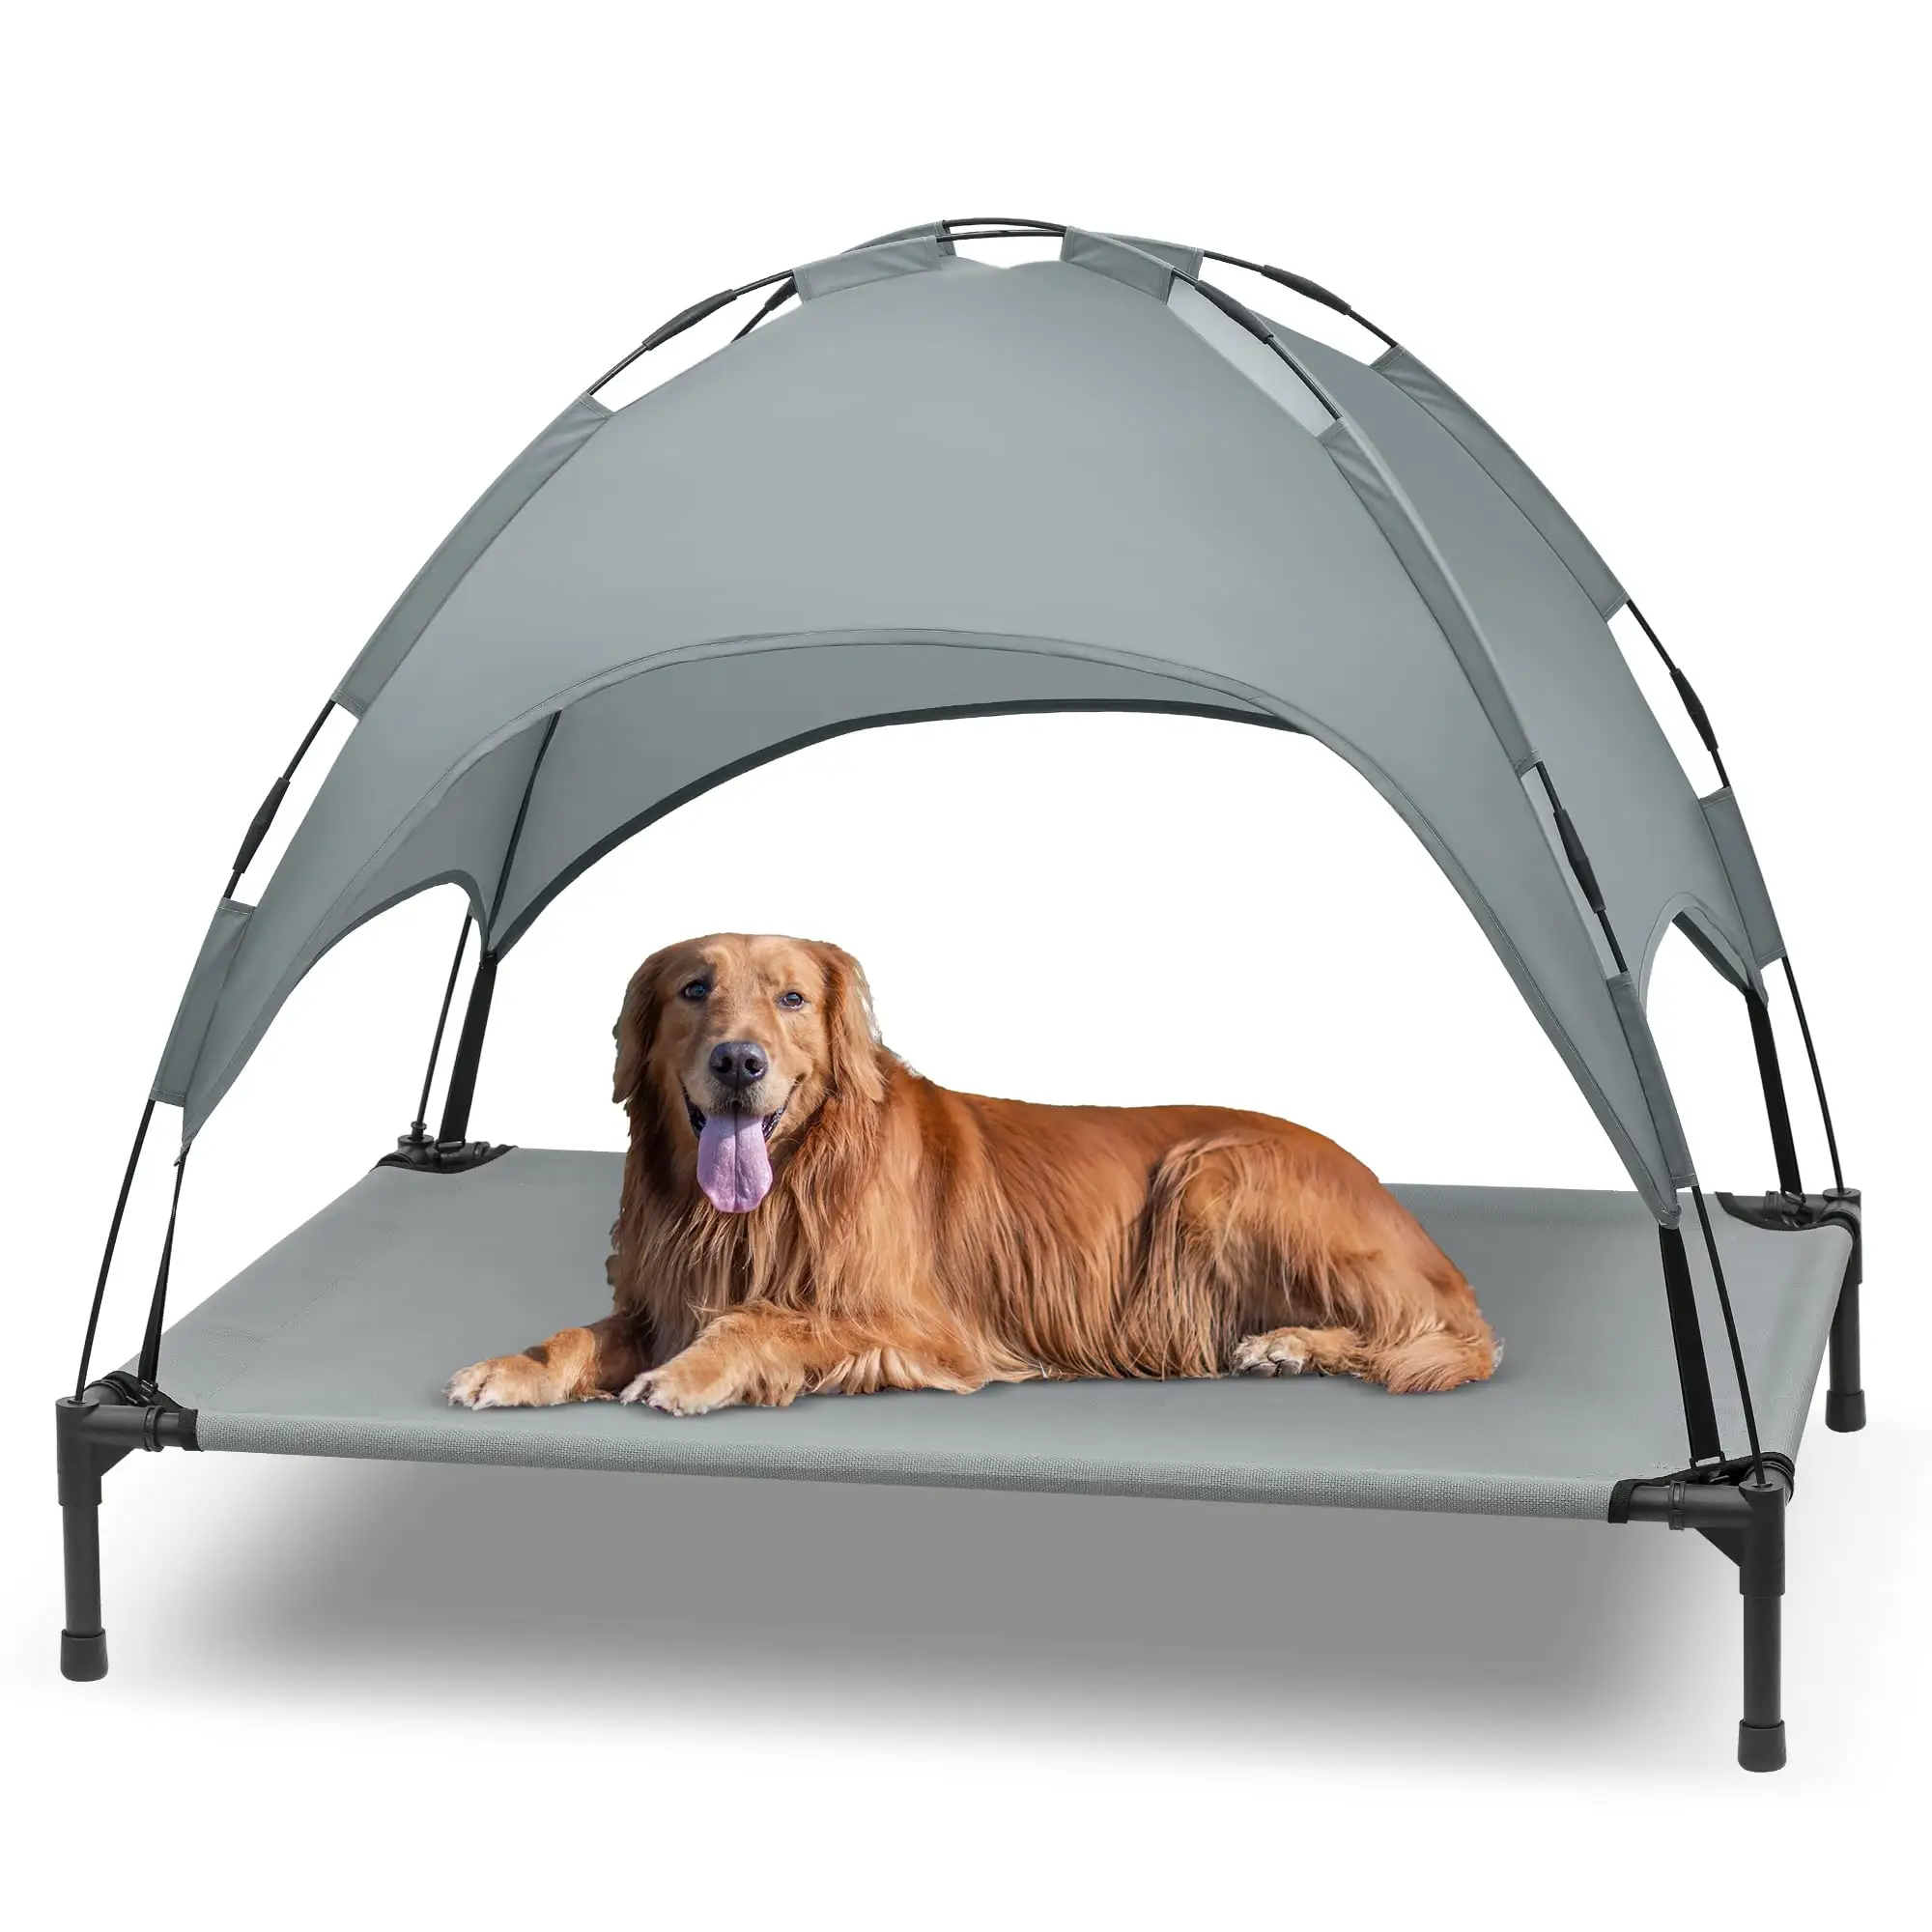 سرير كلب مرتفع 42 بوصة سرير كلب للأماكن الخارجية مع مظلة قابلة للإزالة مهد حيوان أليف محمول مرتفع من Petdom